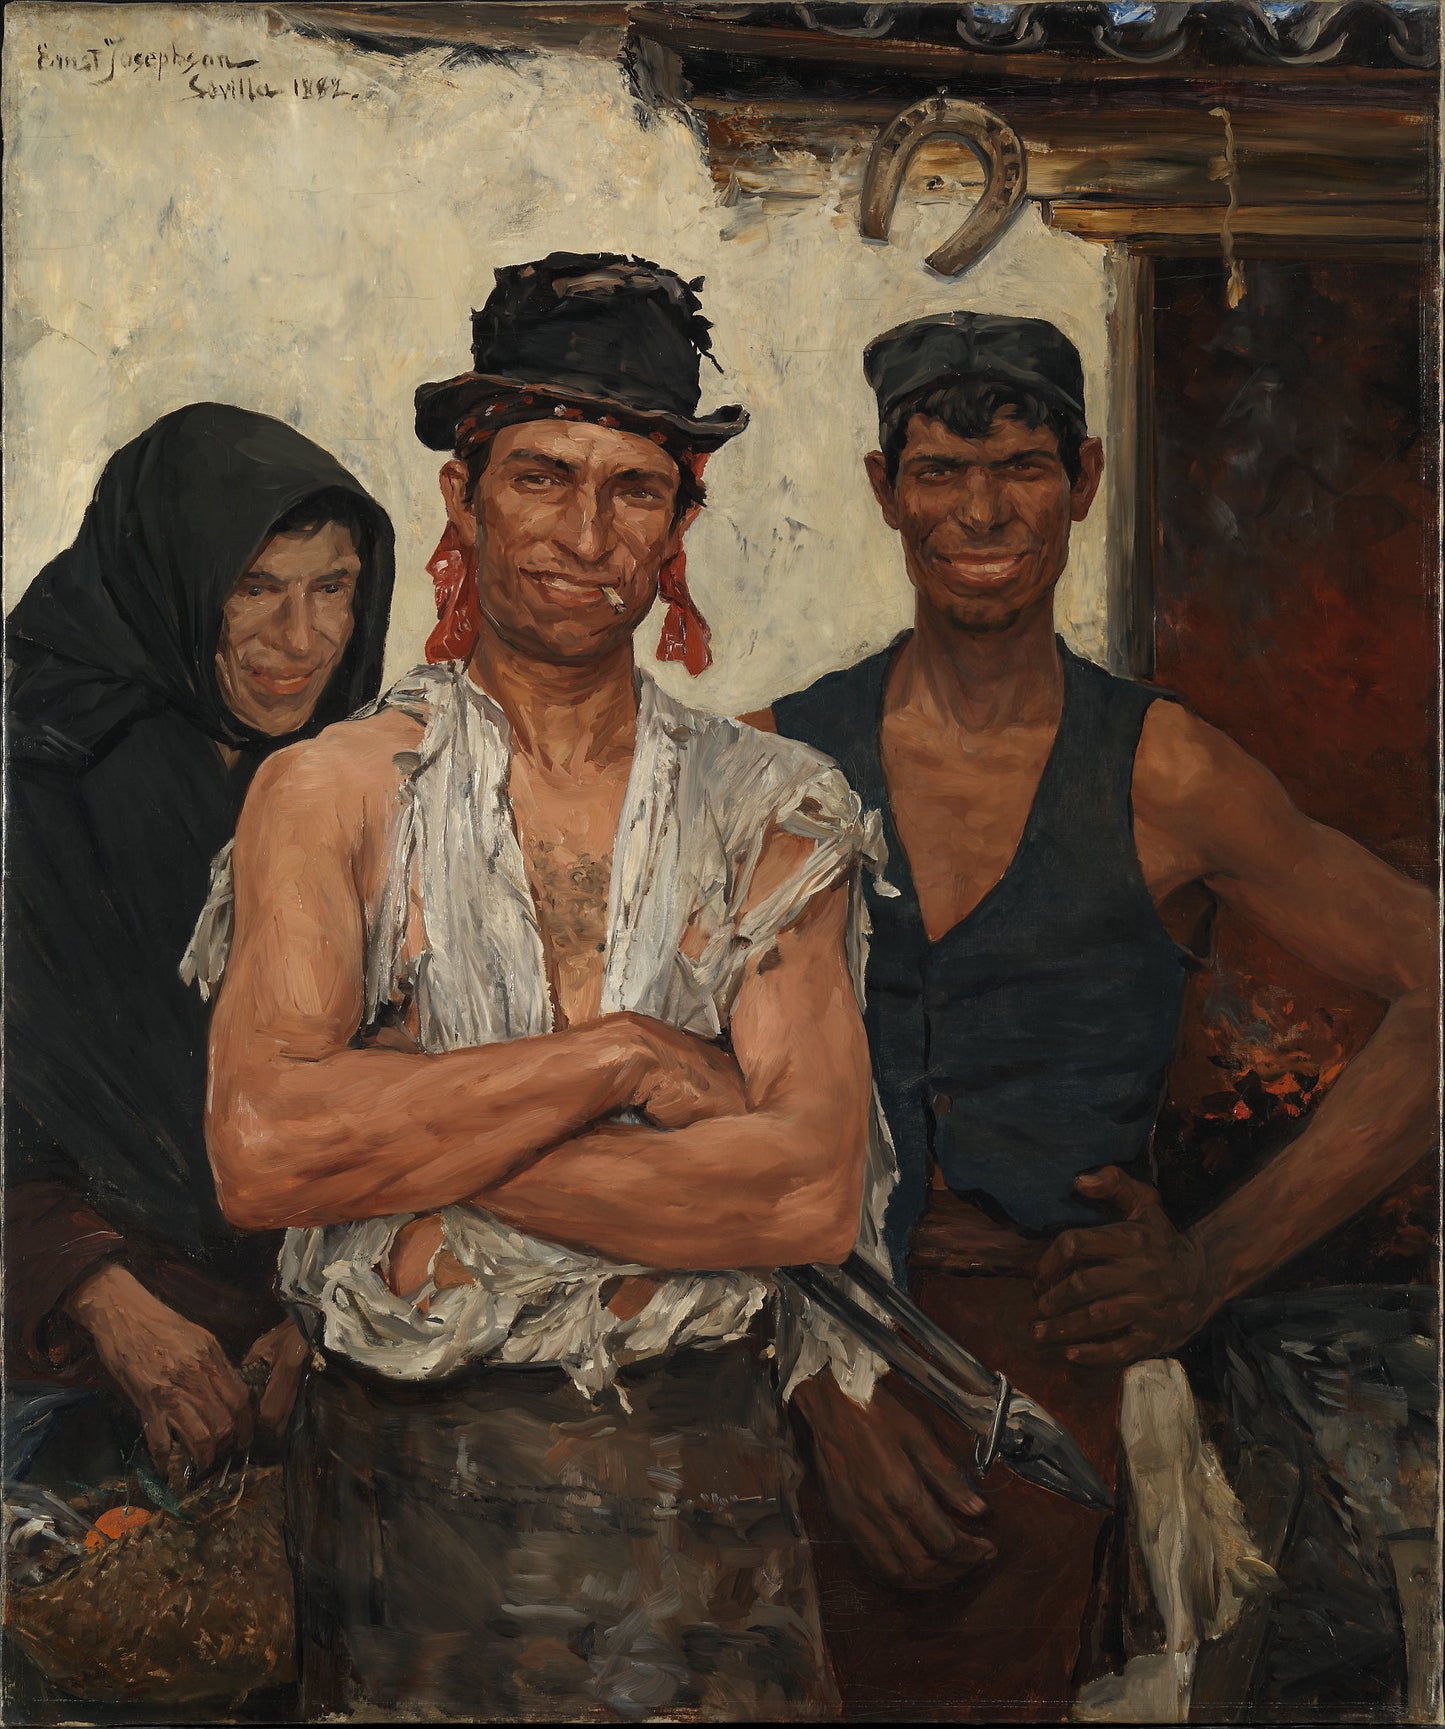 Spanish blacksmiths